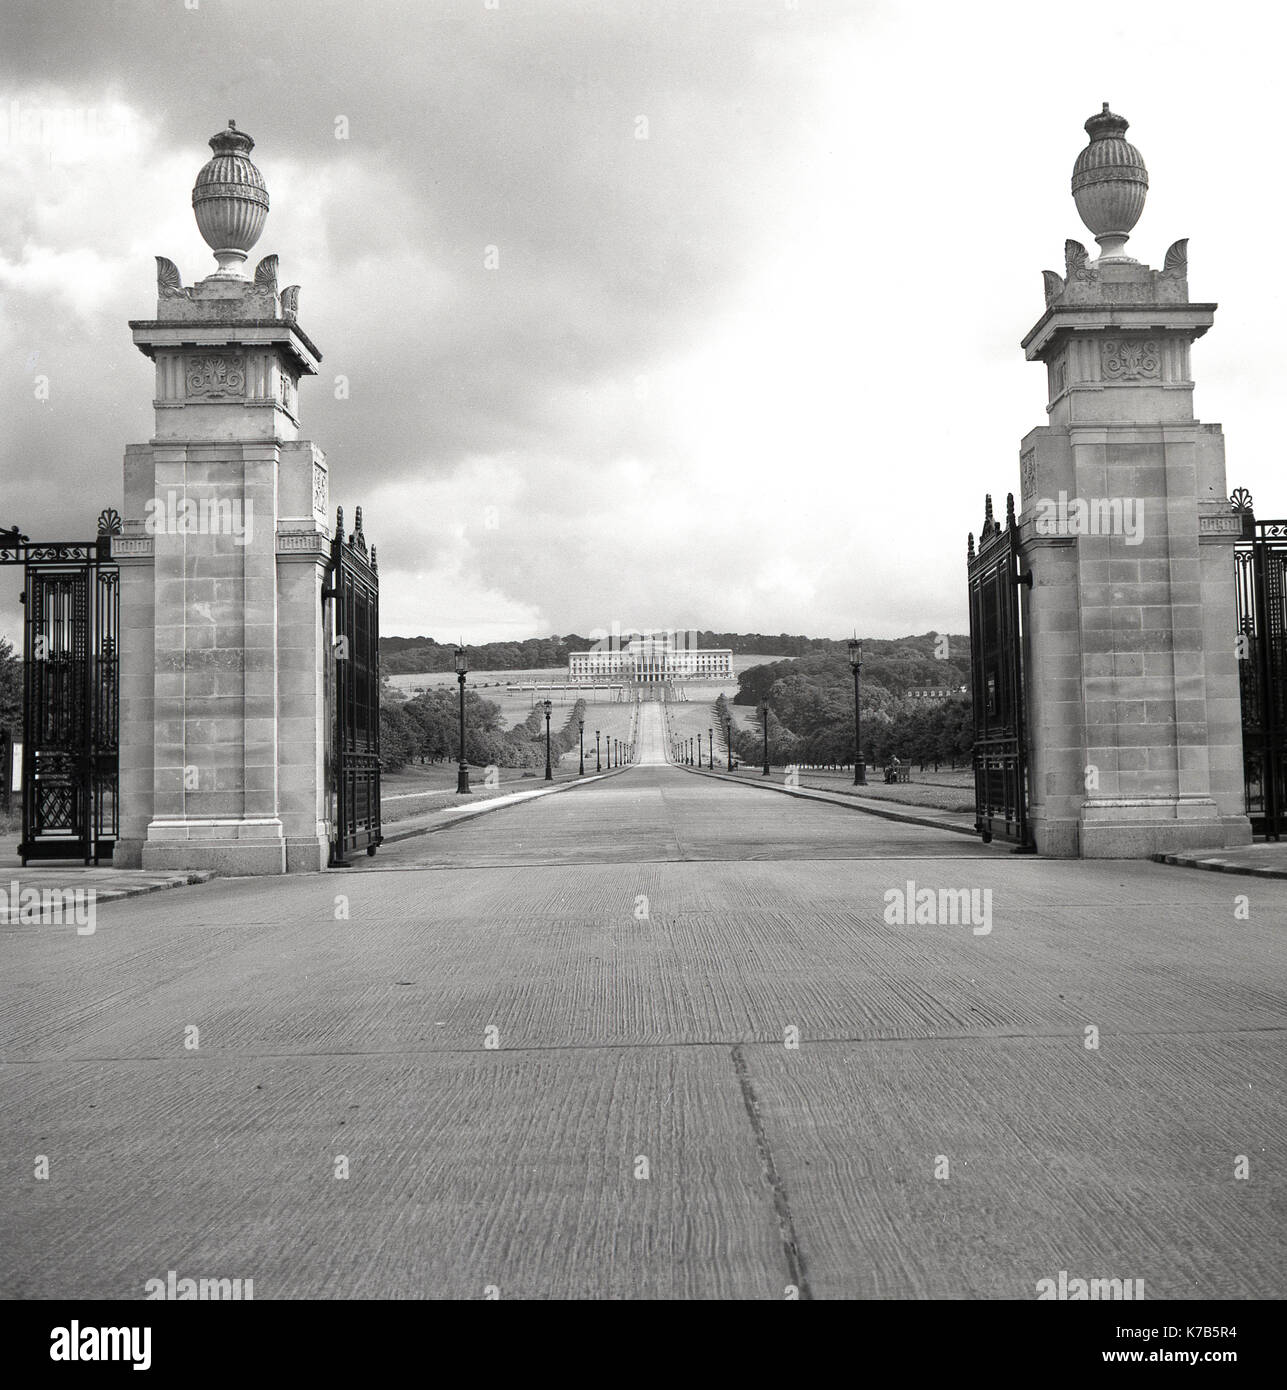 Années 1950, tableau historique des portes et l'entrée au parc et succession de Stormont, à Belfast, en Irlande du Nord, avec le grand bâtiment à la fin de la longue allée conçu dans un style classique grec, l'accueil de l'Assemblée d'Irlande du Nord (Parlement) depuis 1998. Banque D'Images